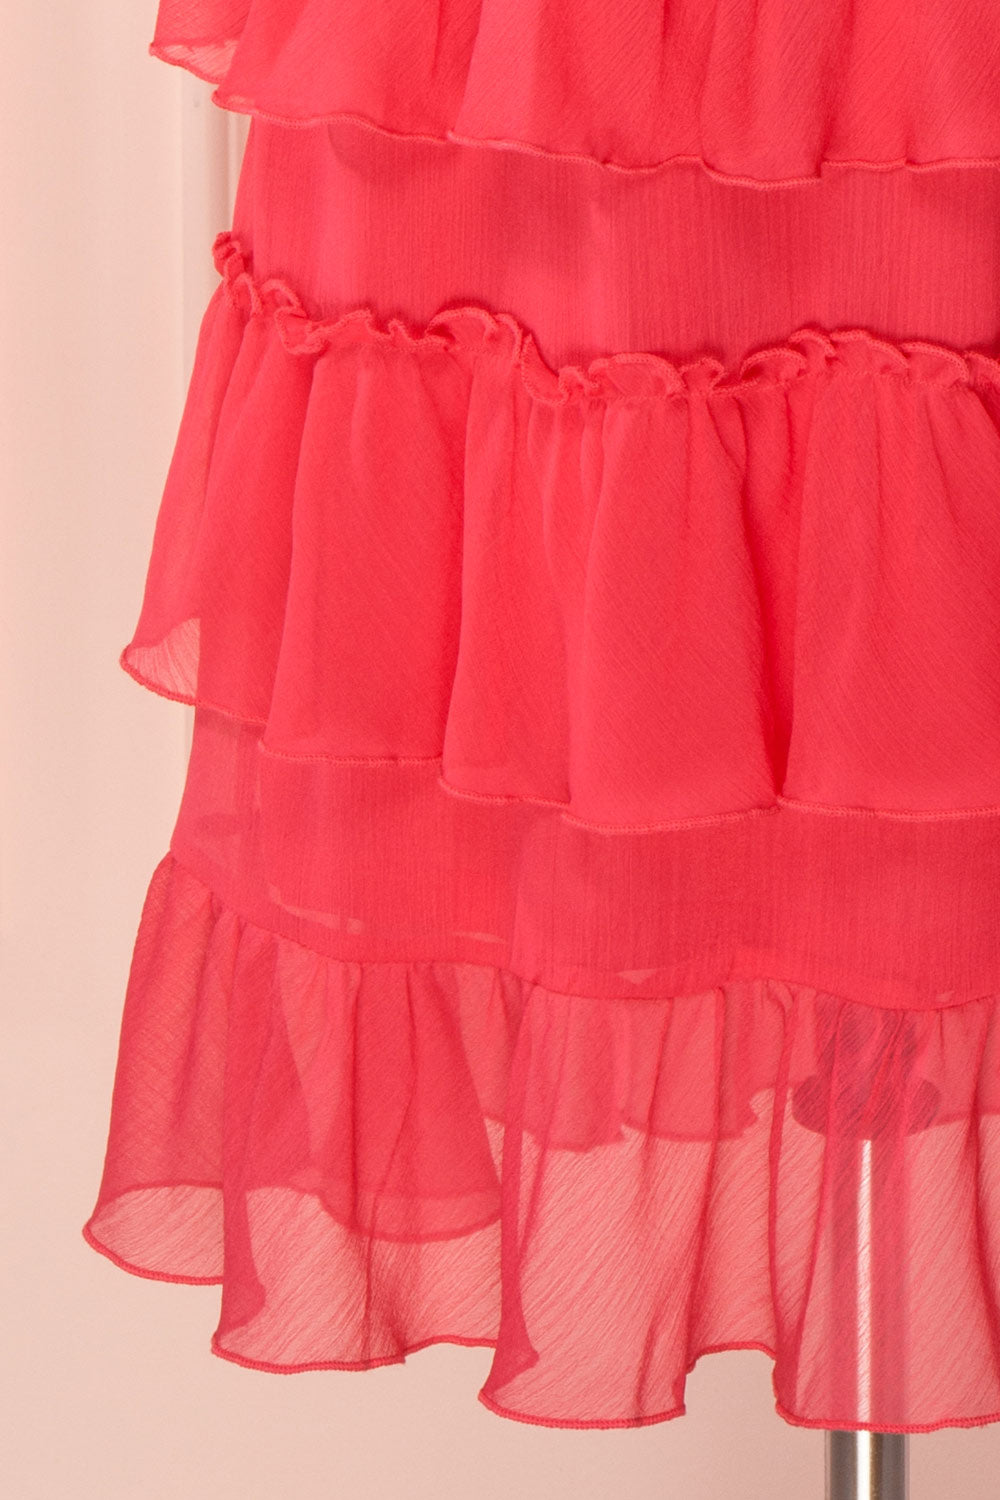 Gova Red Layered Ruffles Festive Midi Skirt | Boutique 1861 8